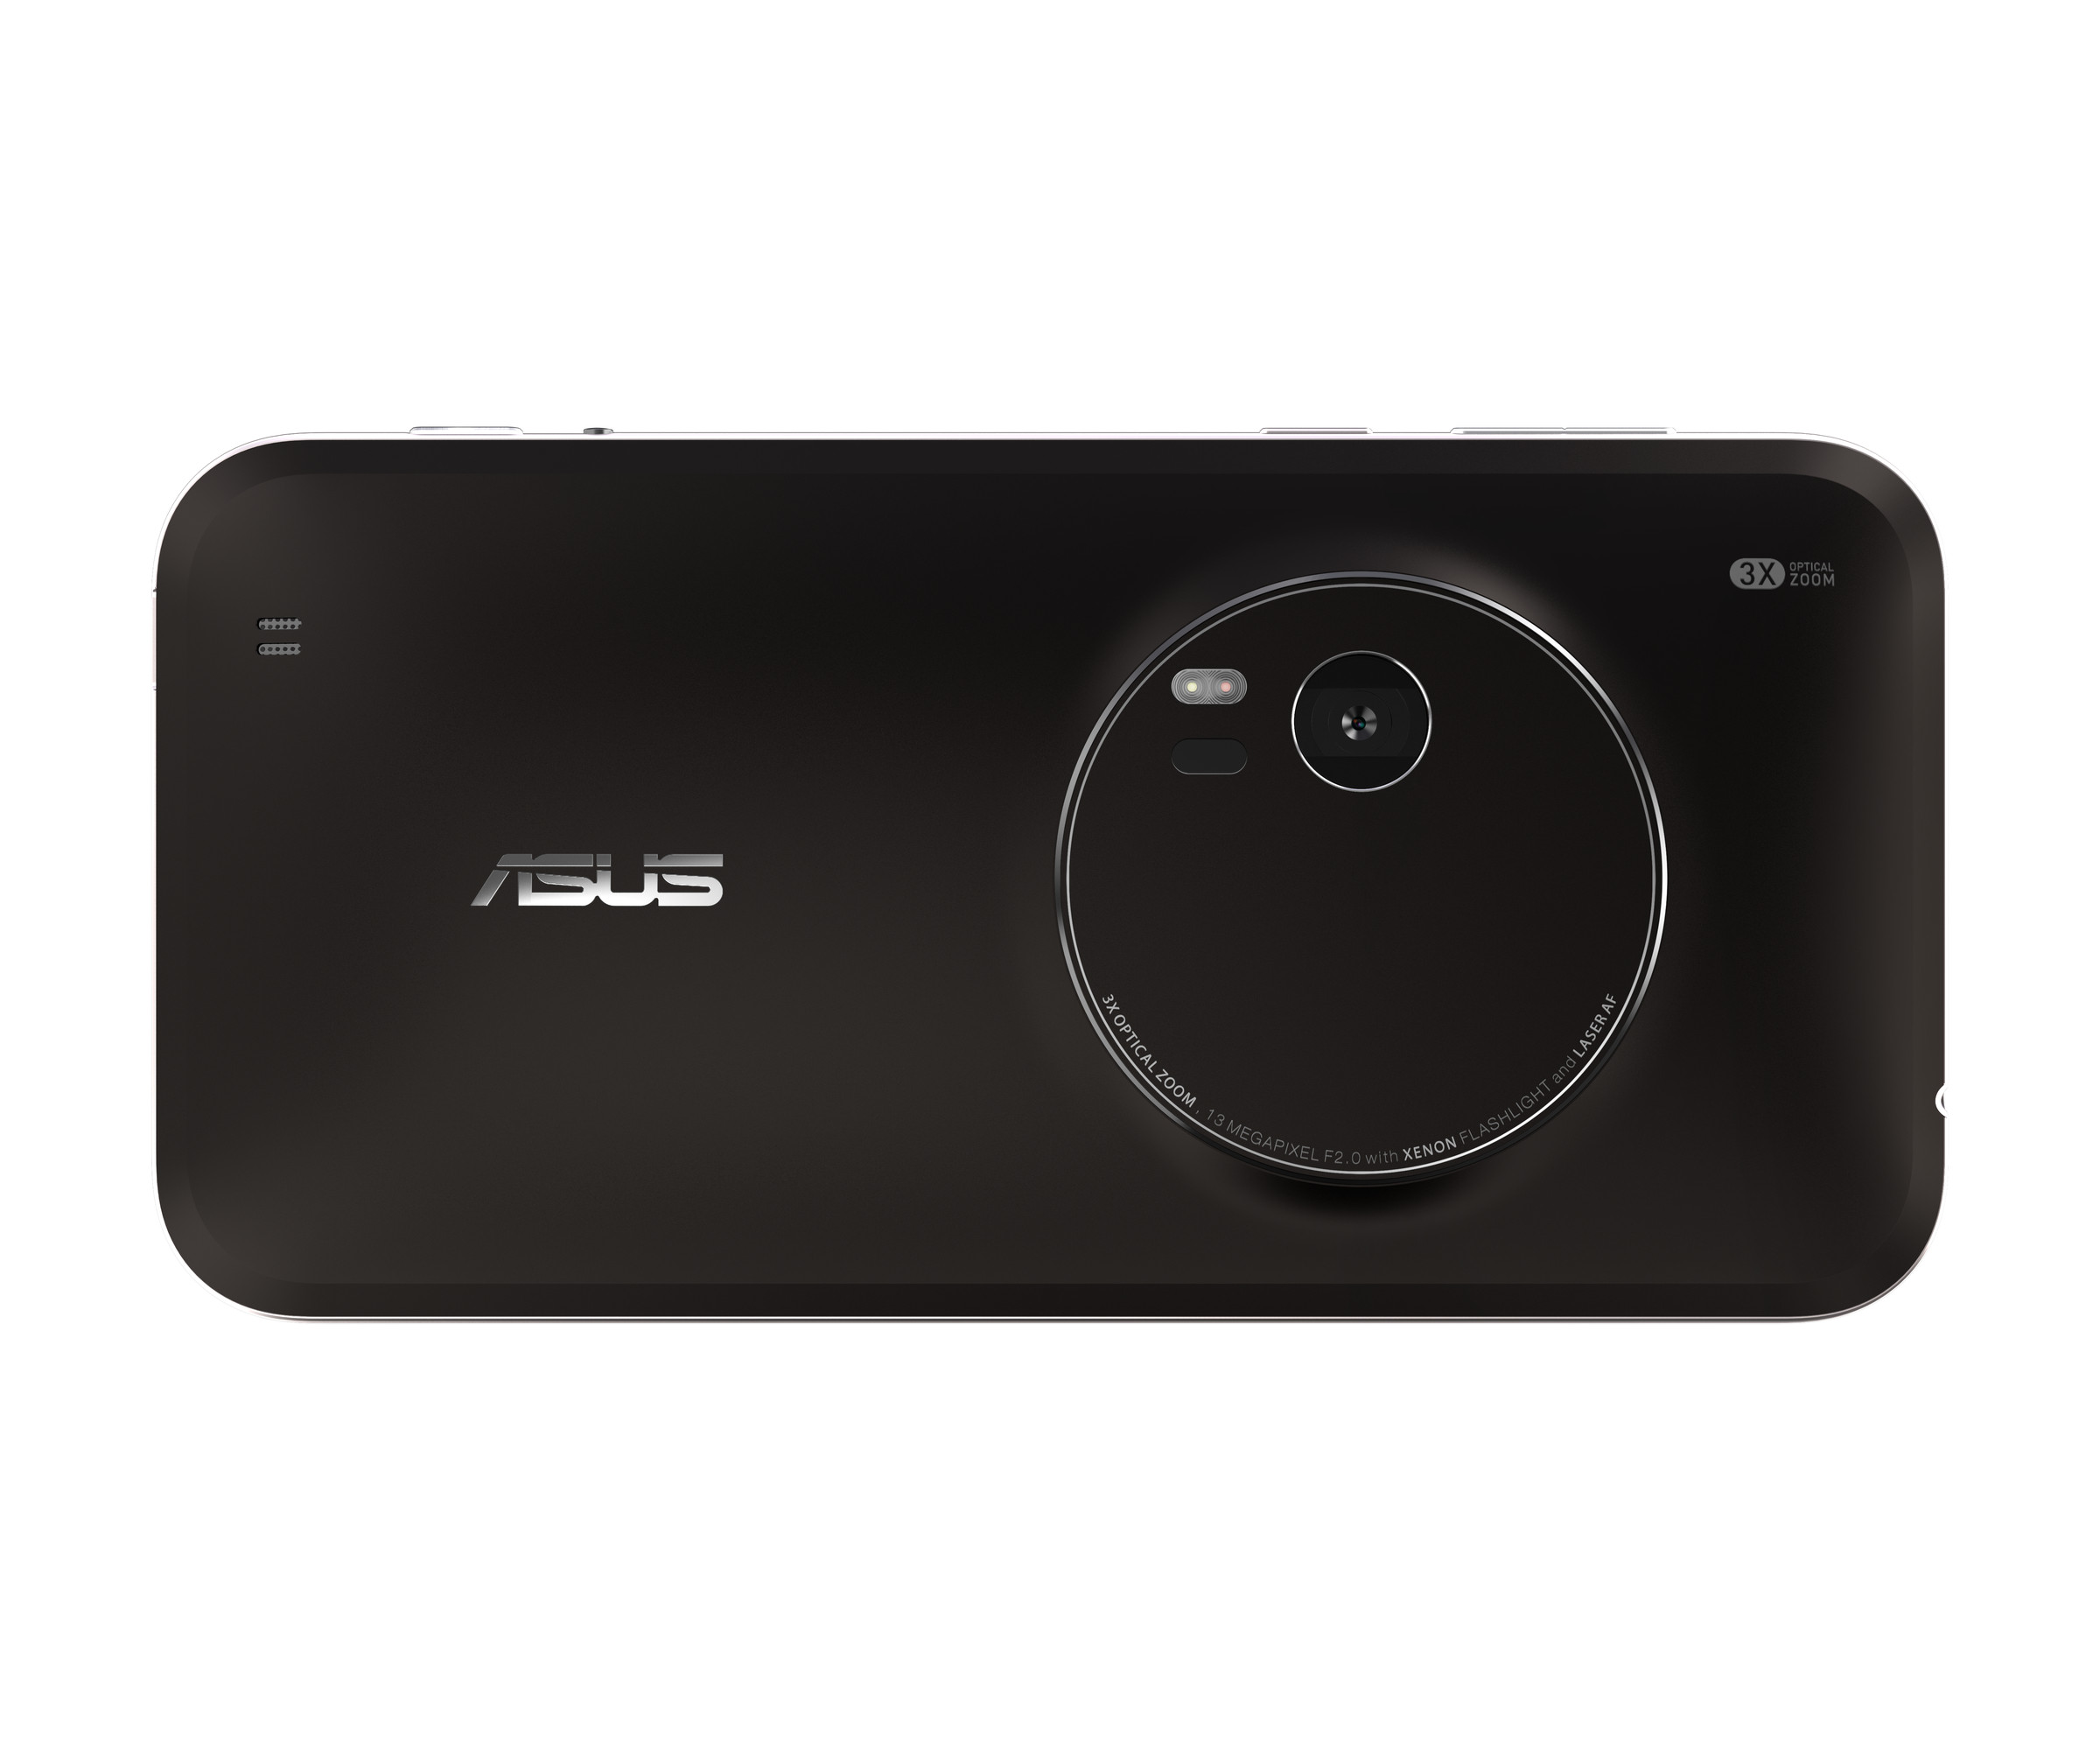 The Asus ZenFone 2 and ZenFone Zoom in photos